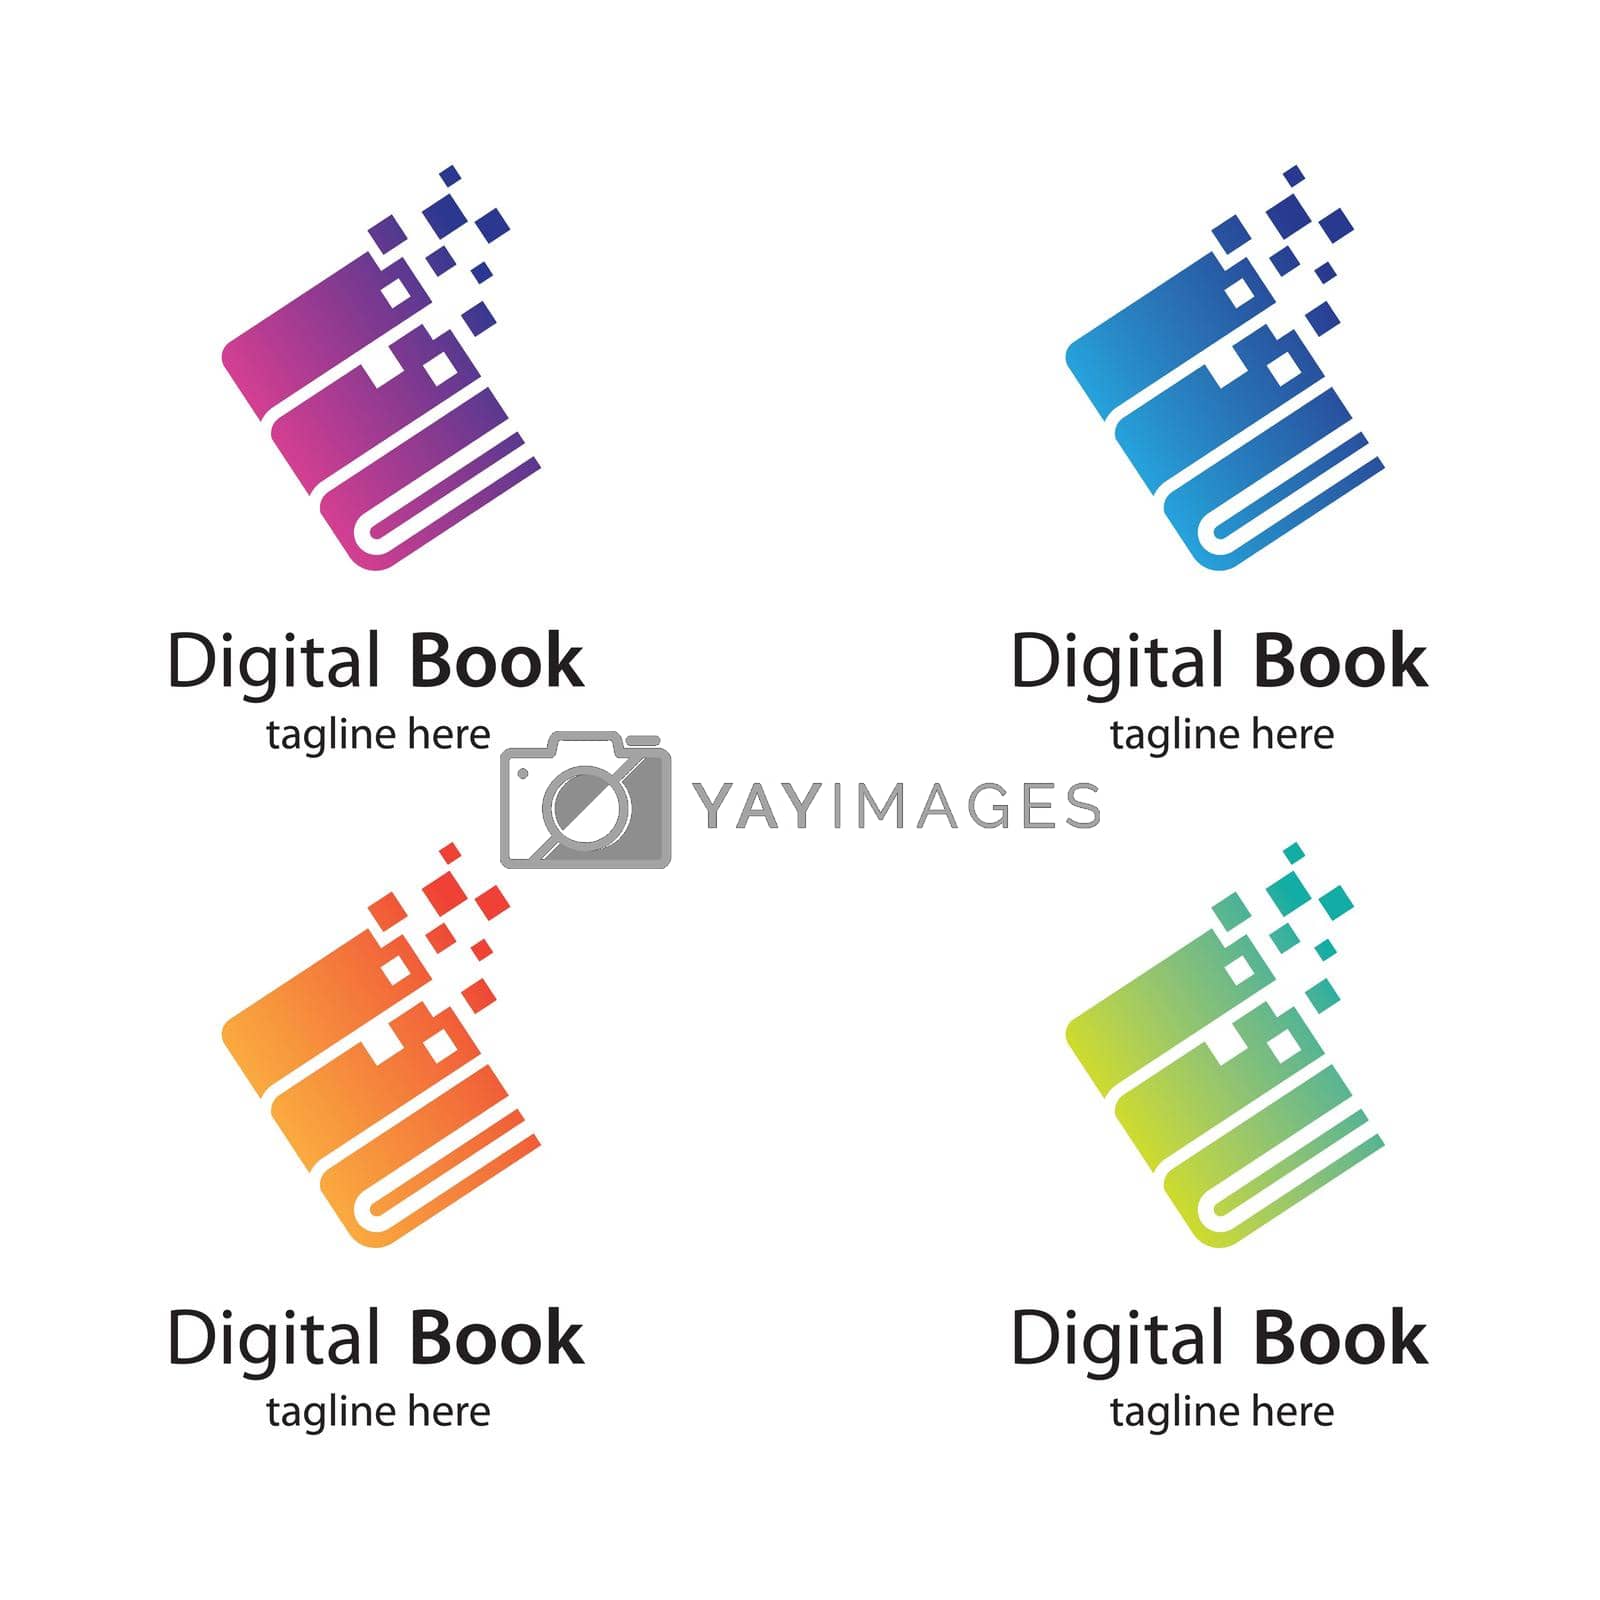 Digital book logo technology vector icon design